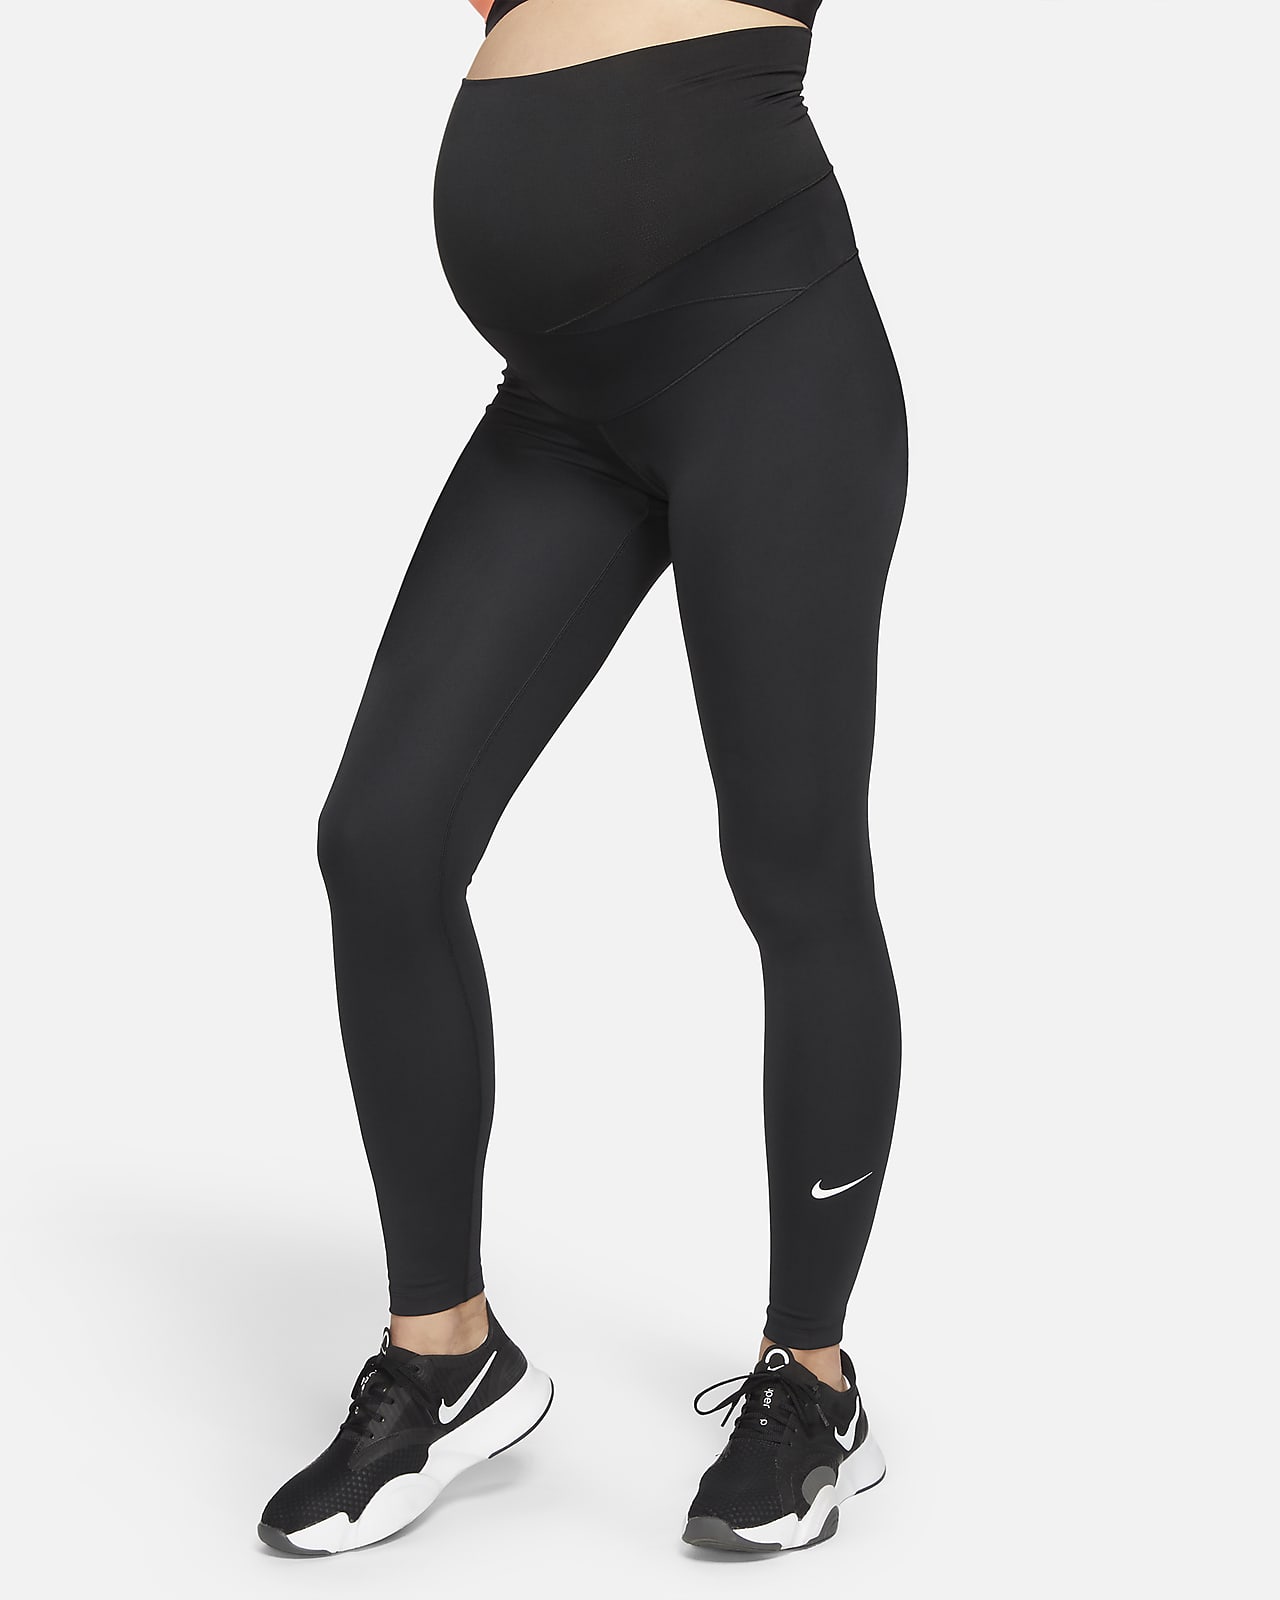 Nike - Leggings alla caviglia a vita alta neri con stampa Just Do